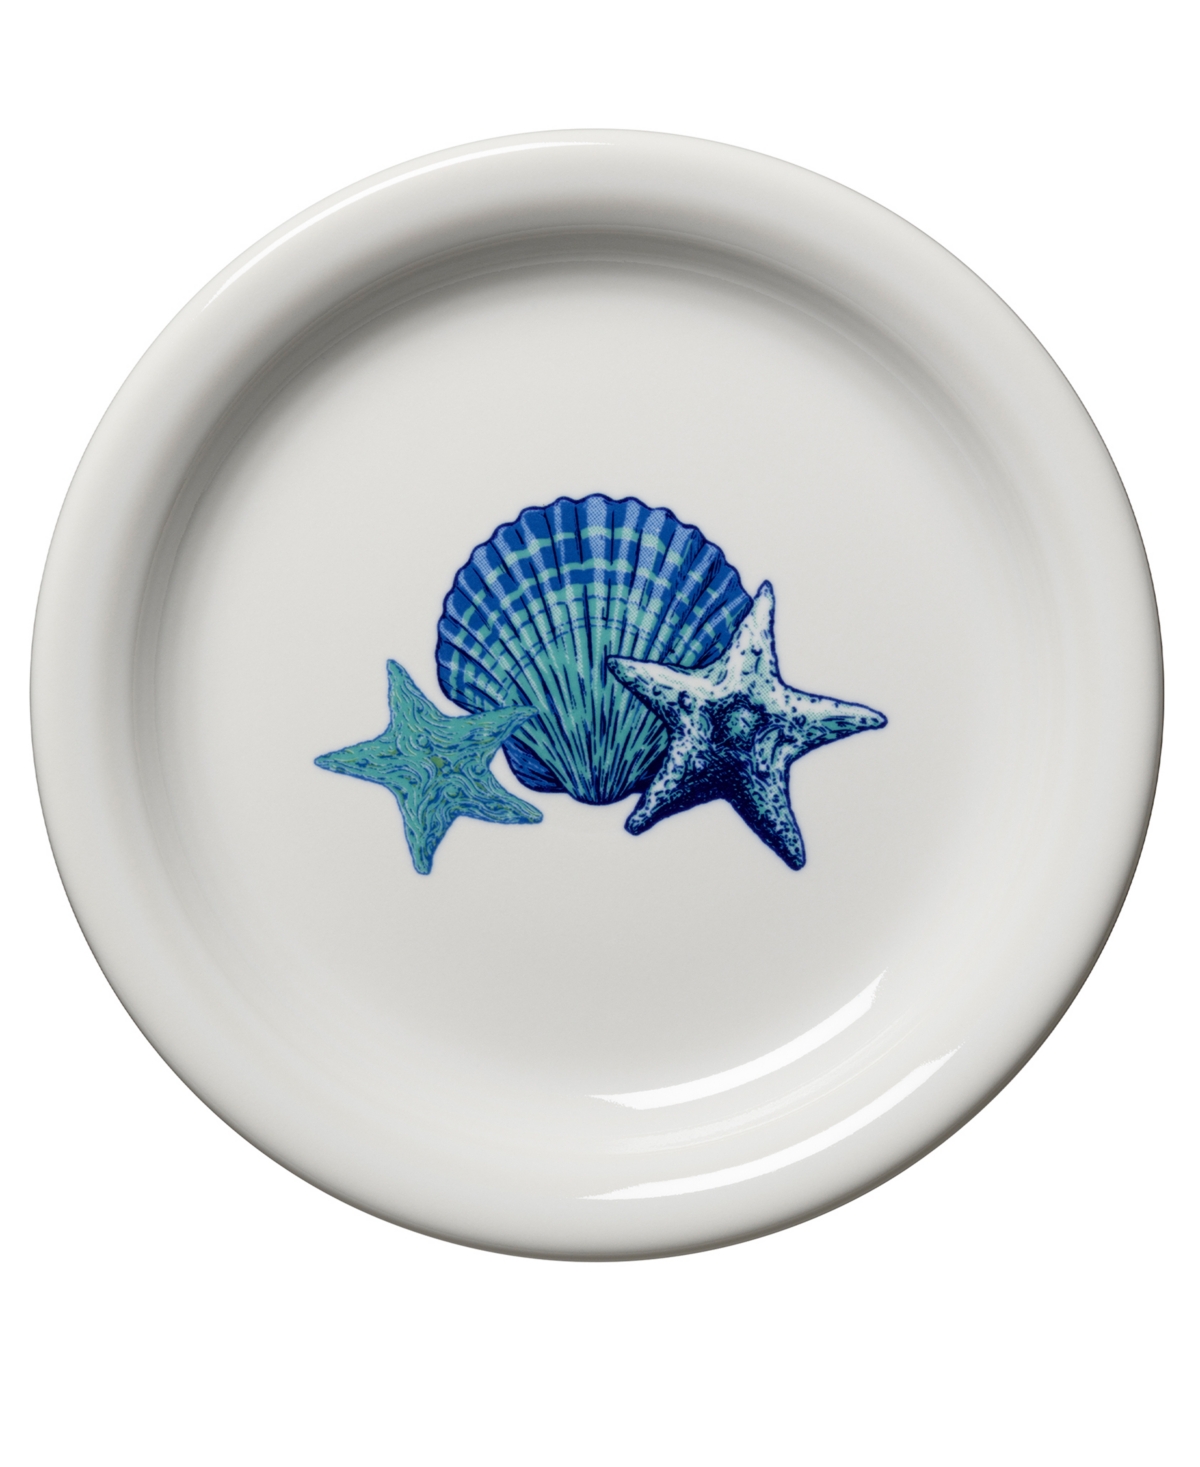 Coastal Appetizer Plate - Multi Color Design With Coastal Colors